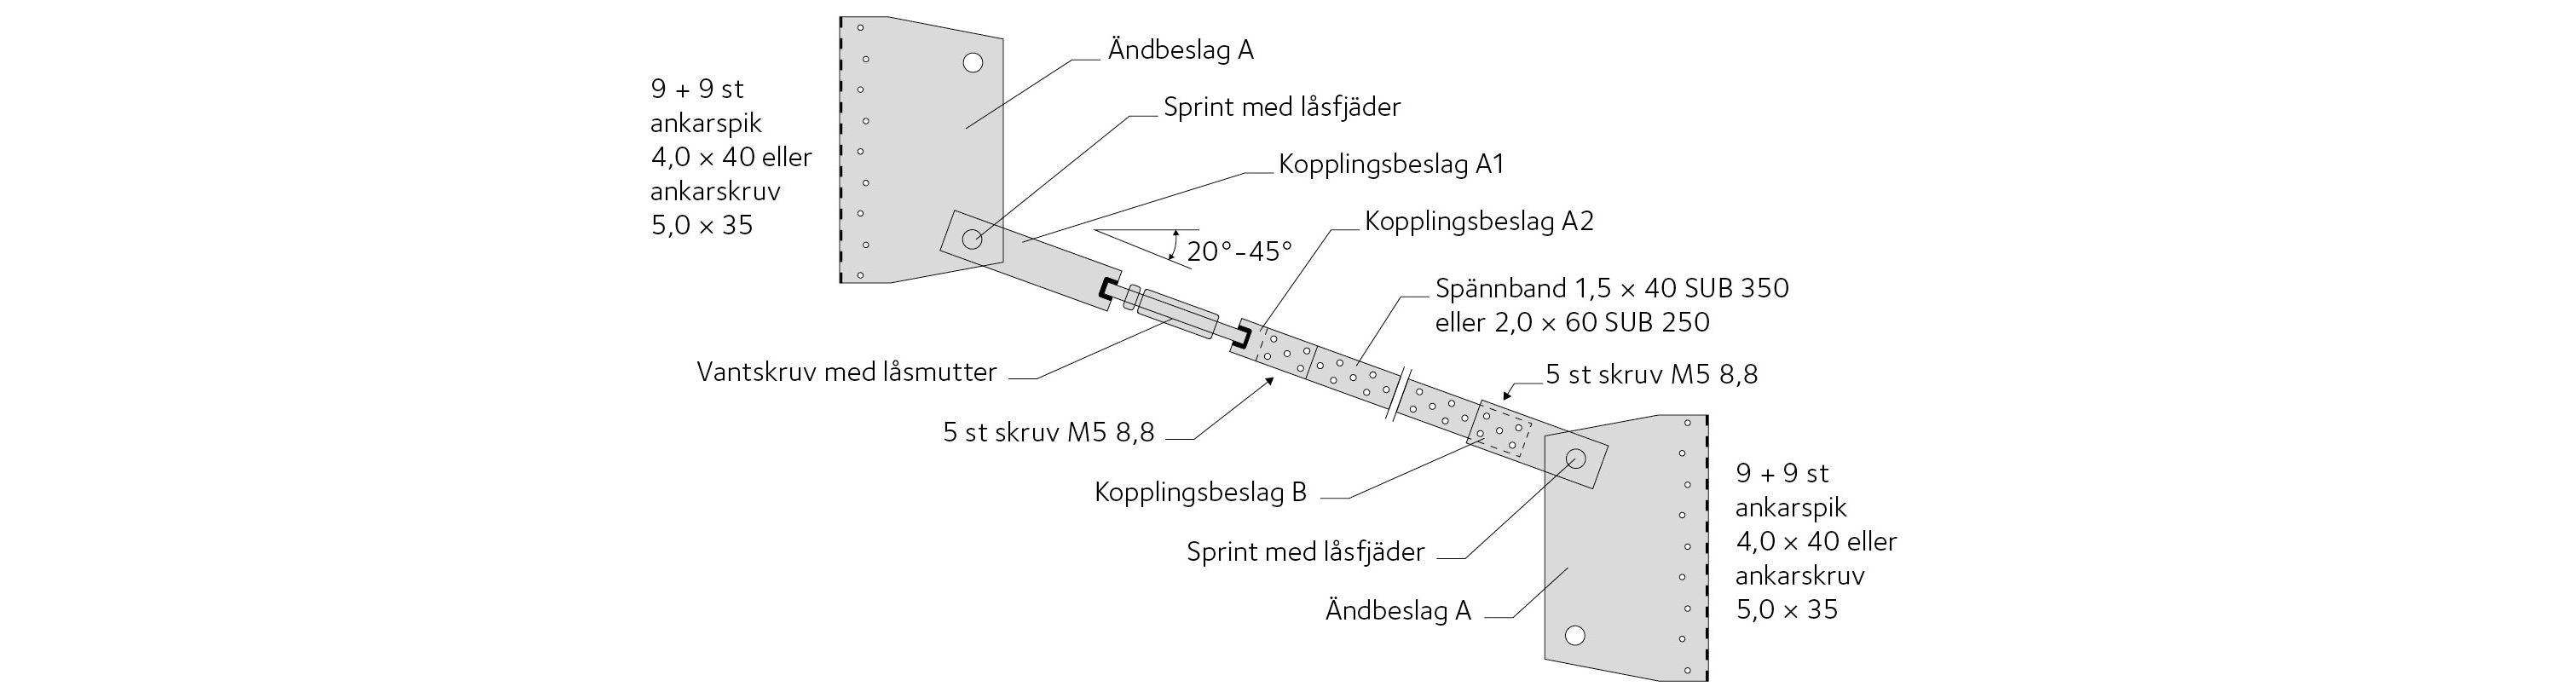 Figur 3.5 Exempel på dragbandssystem för takkonstruktioner.